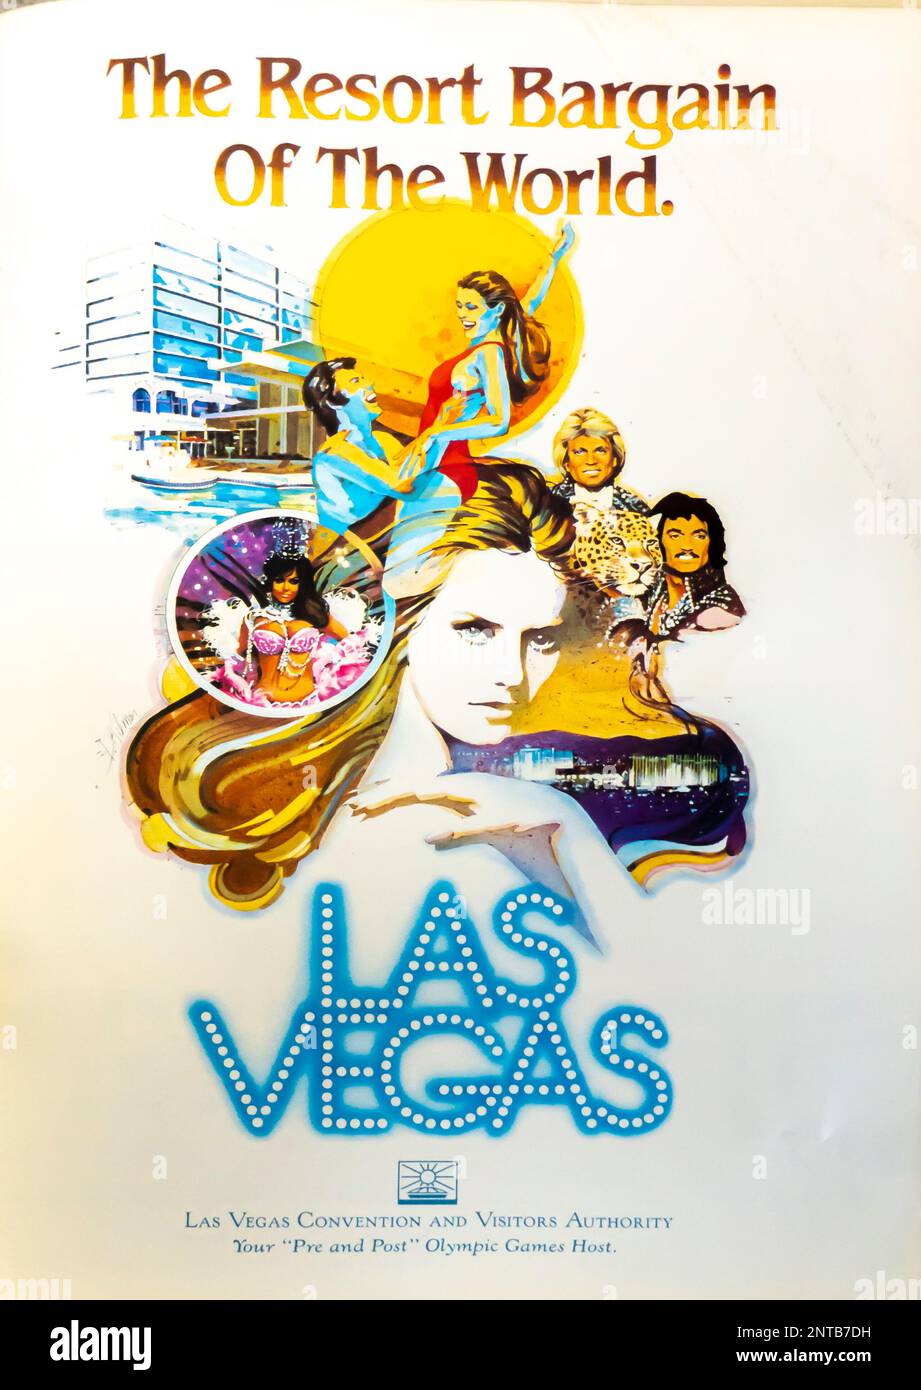 Publicité de voyage à Las Vegas dans un magazine NatGeo, novembre 1983 Banque D'Images